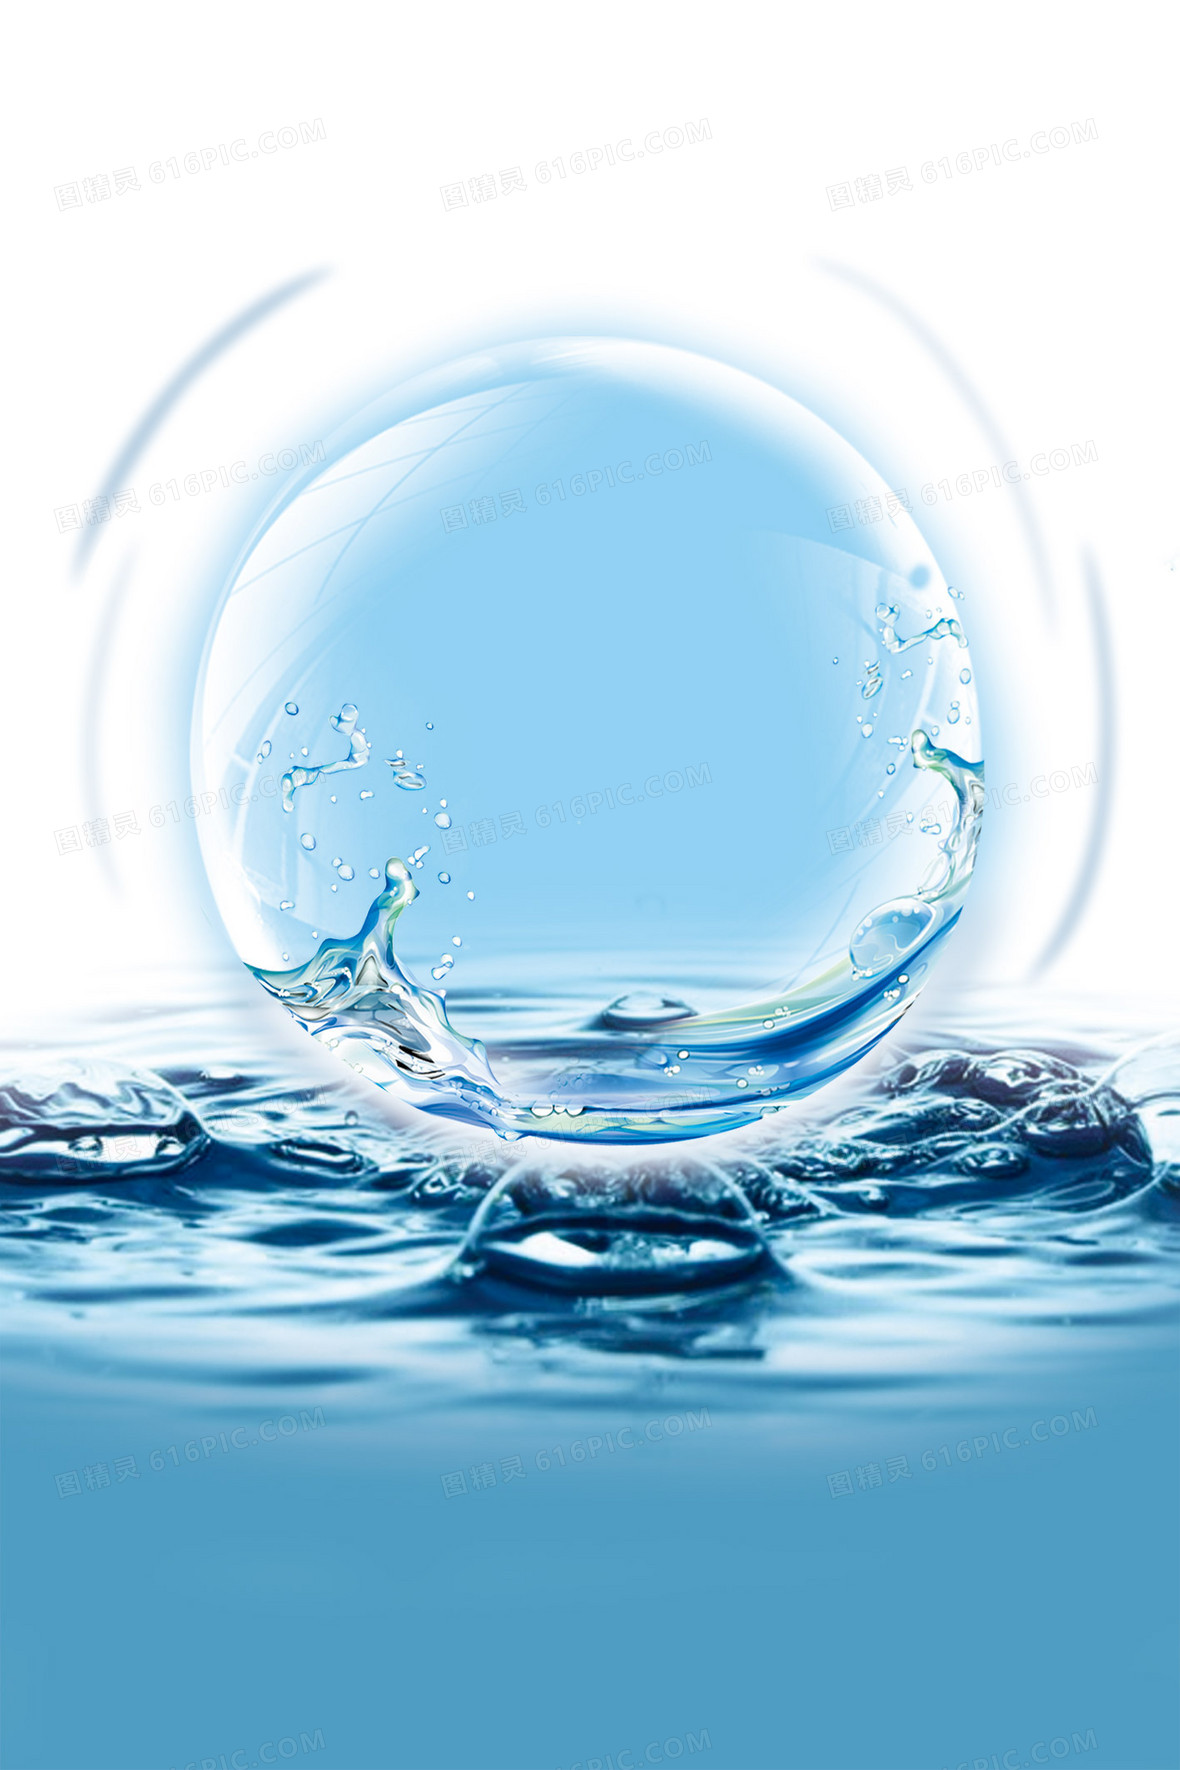 水元素背景图片下载 免费高清水元素背景设计素材 图精灵